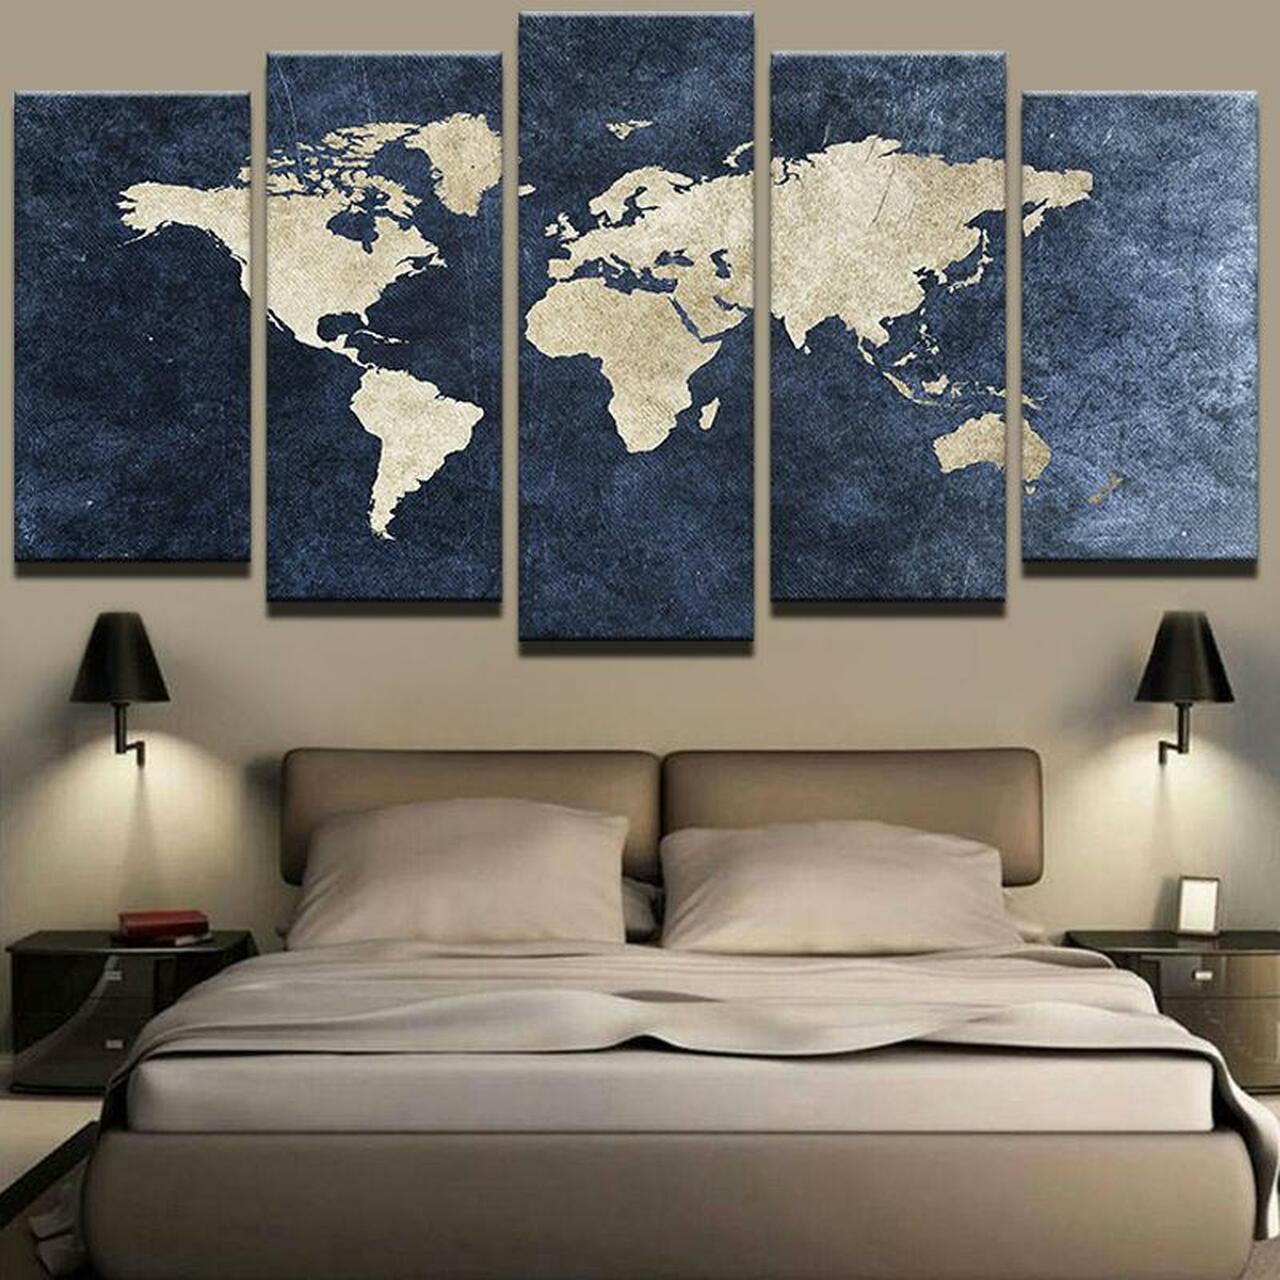 art 1 world map 5 pices peinture sur toile impression sur toile toile art pour la dcoration intrieurejbeeu